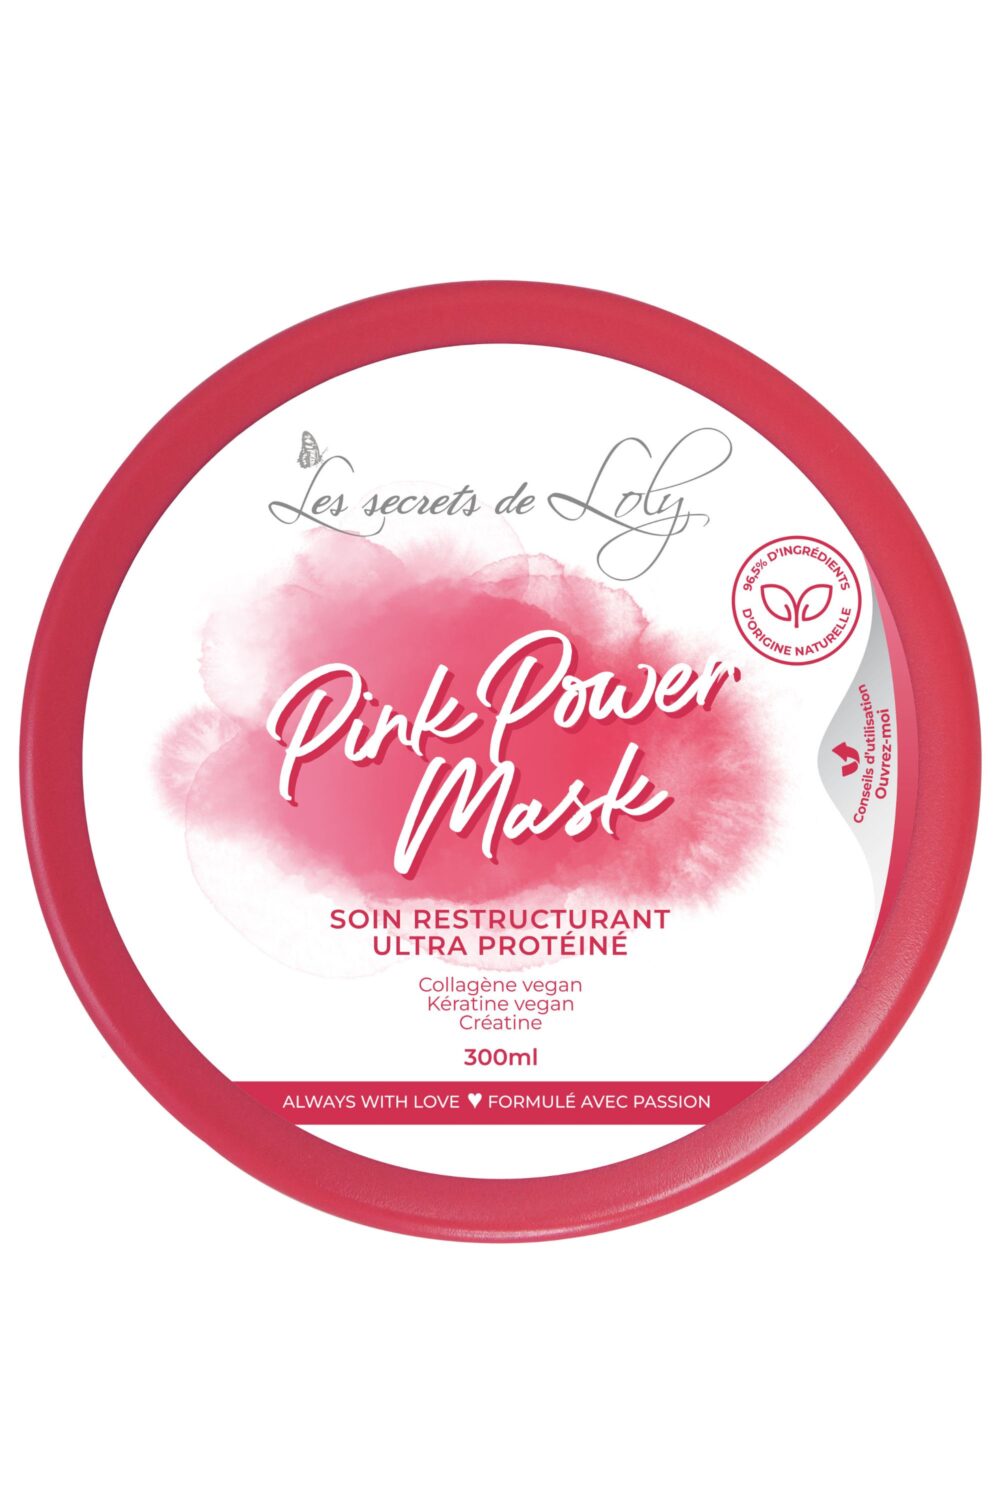 Les Secrets de Loly - Masque capillaire Pink Power Mask pour cheveux abimés